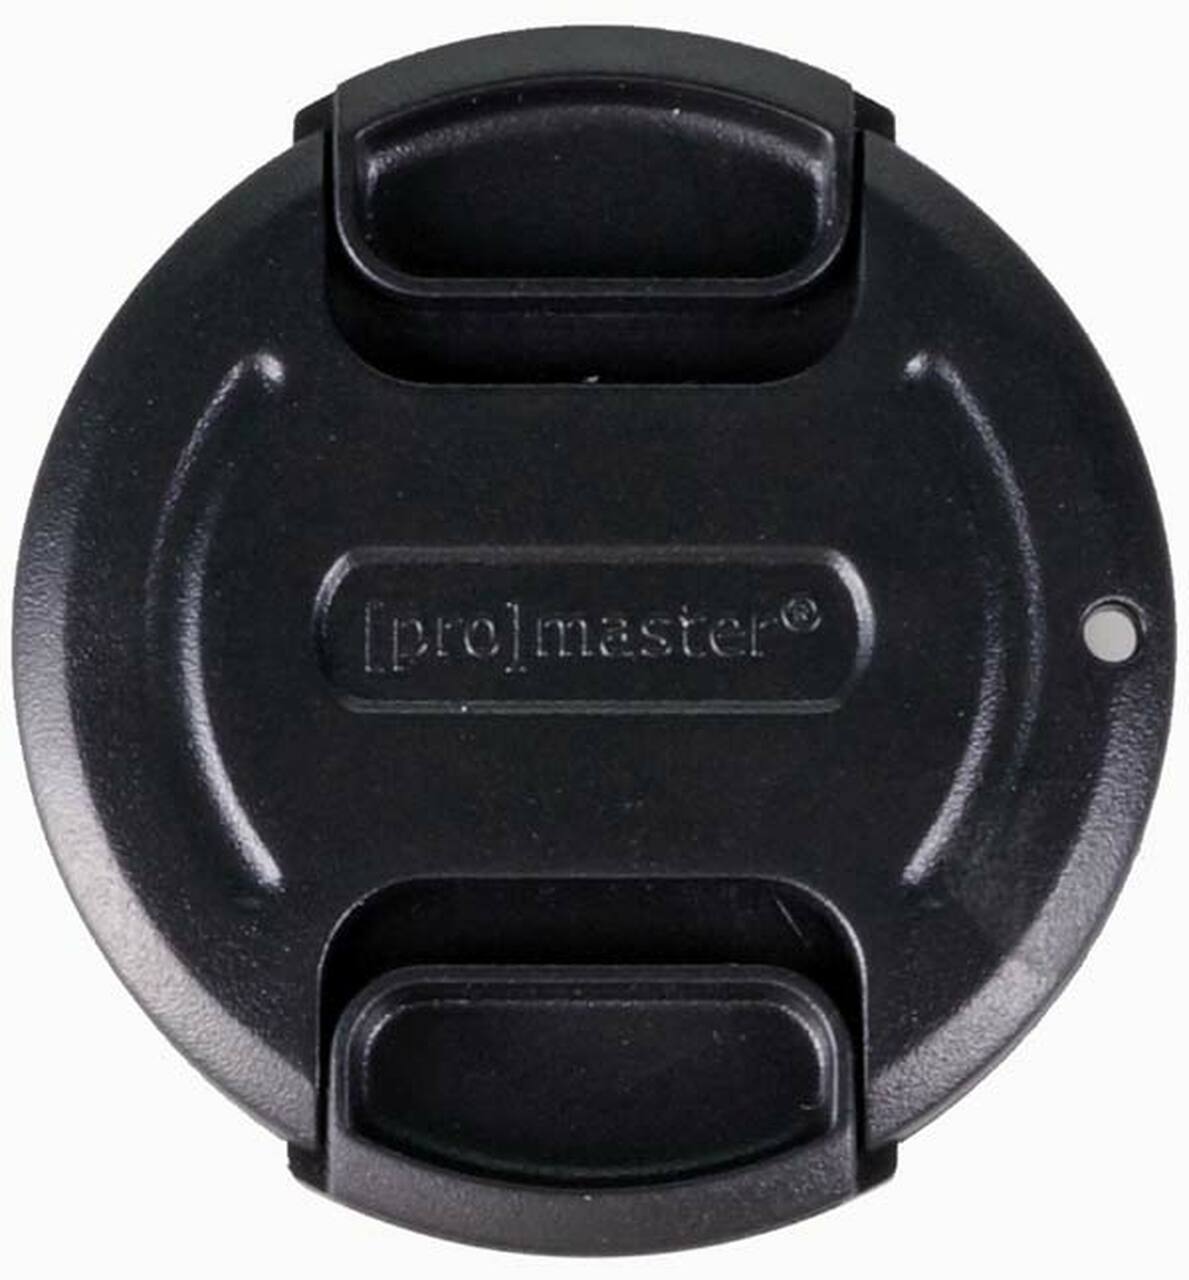 Promaster 3067 37mm Lens Cap